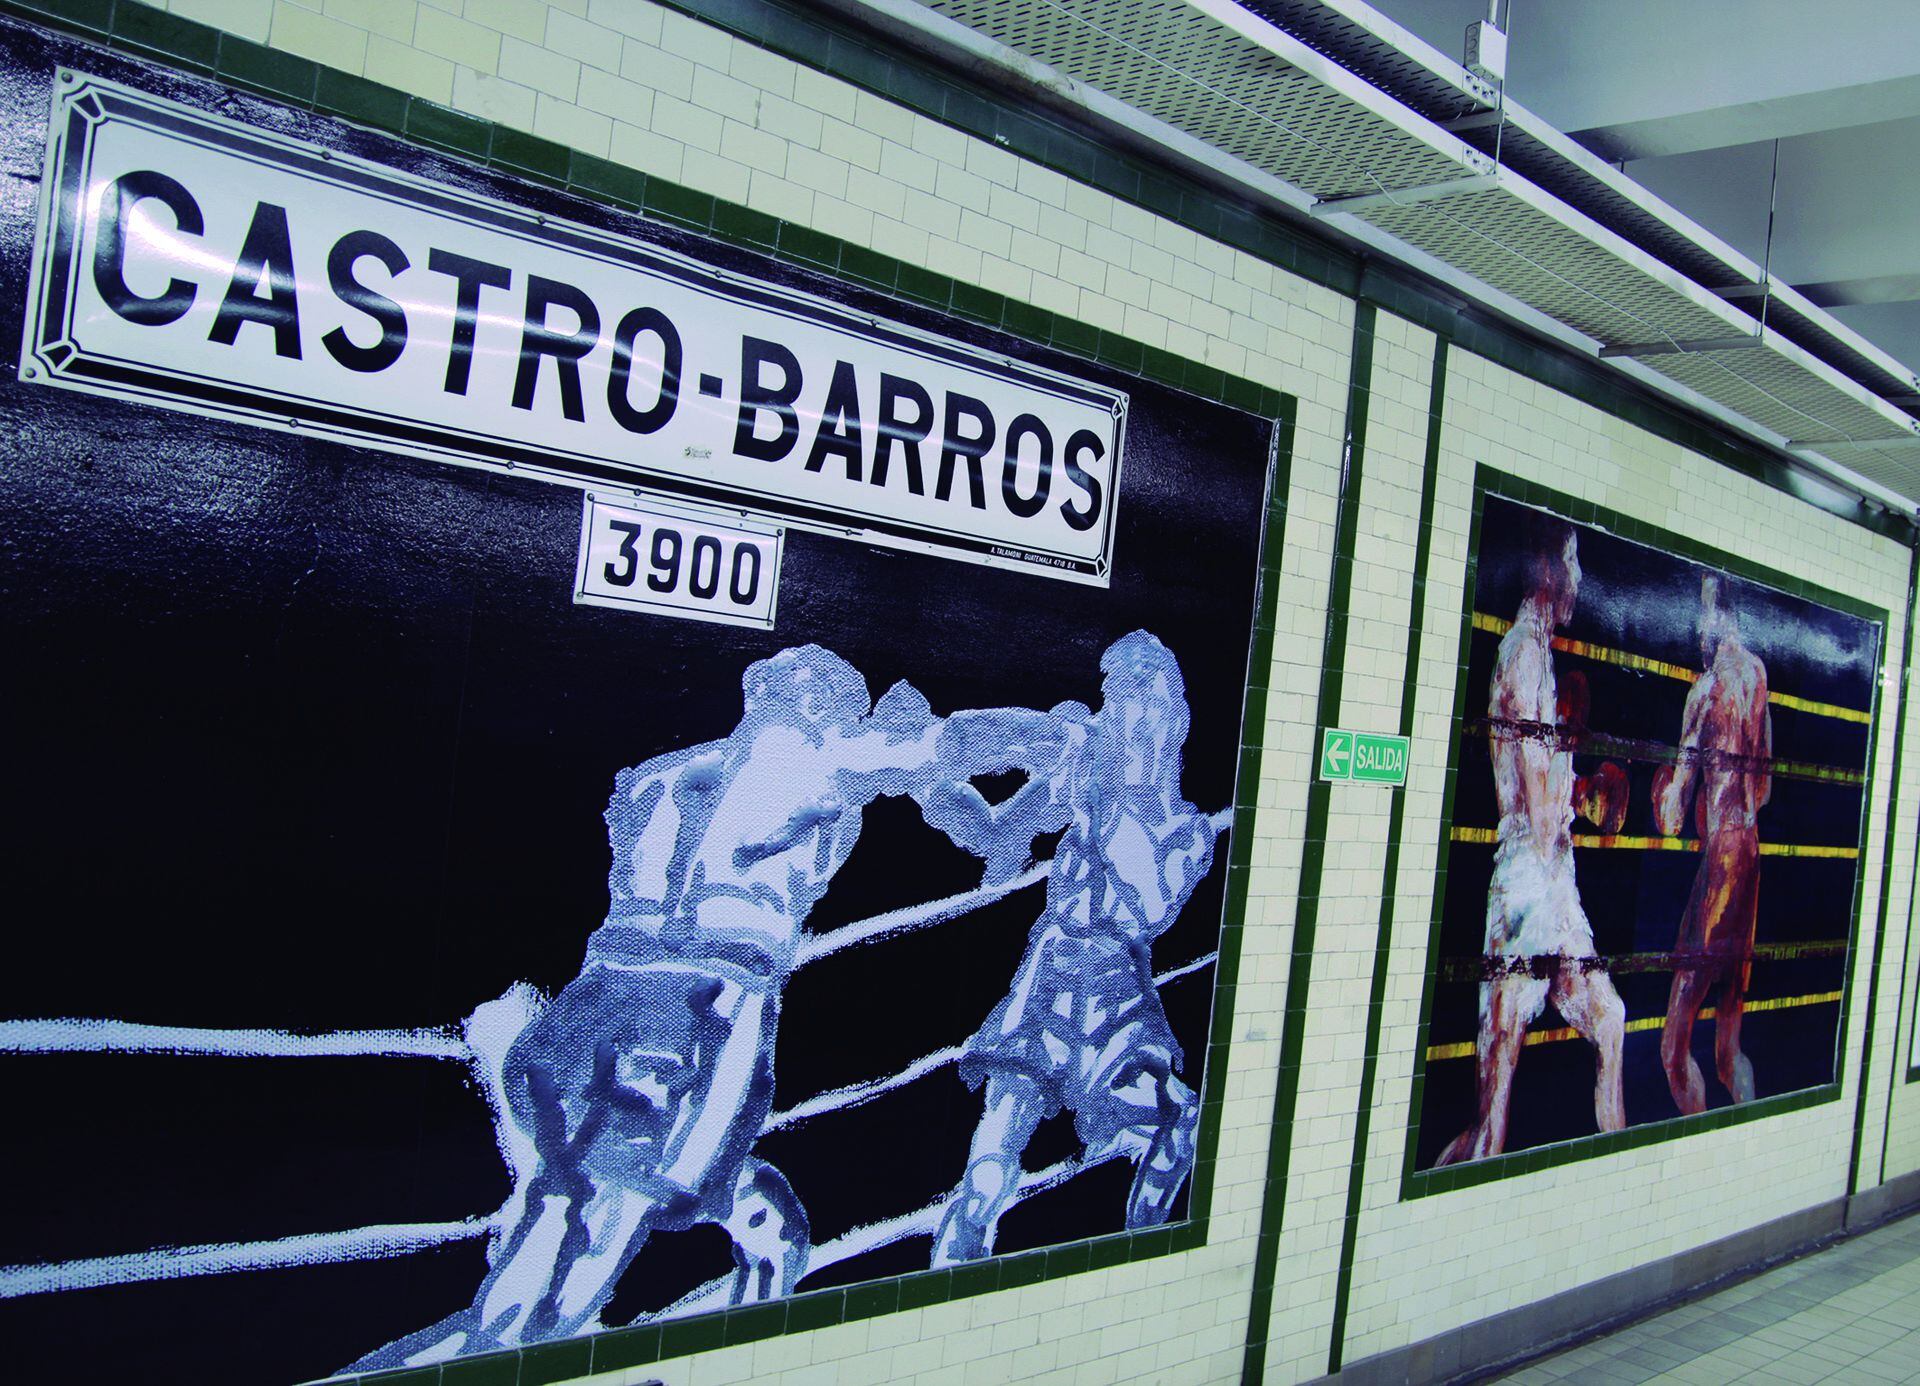 El próximo lunes 29 de mayo, la estación Castro Barros reabre sus molinetes (Subte Buenos Aires)